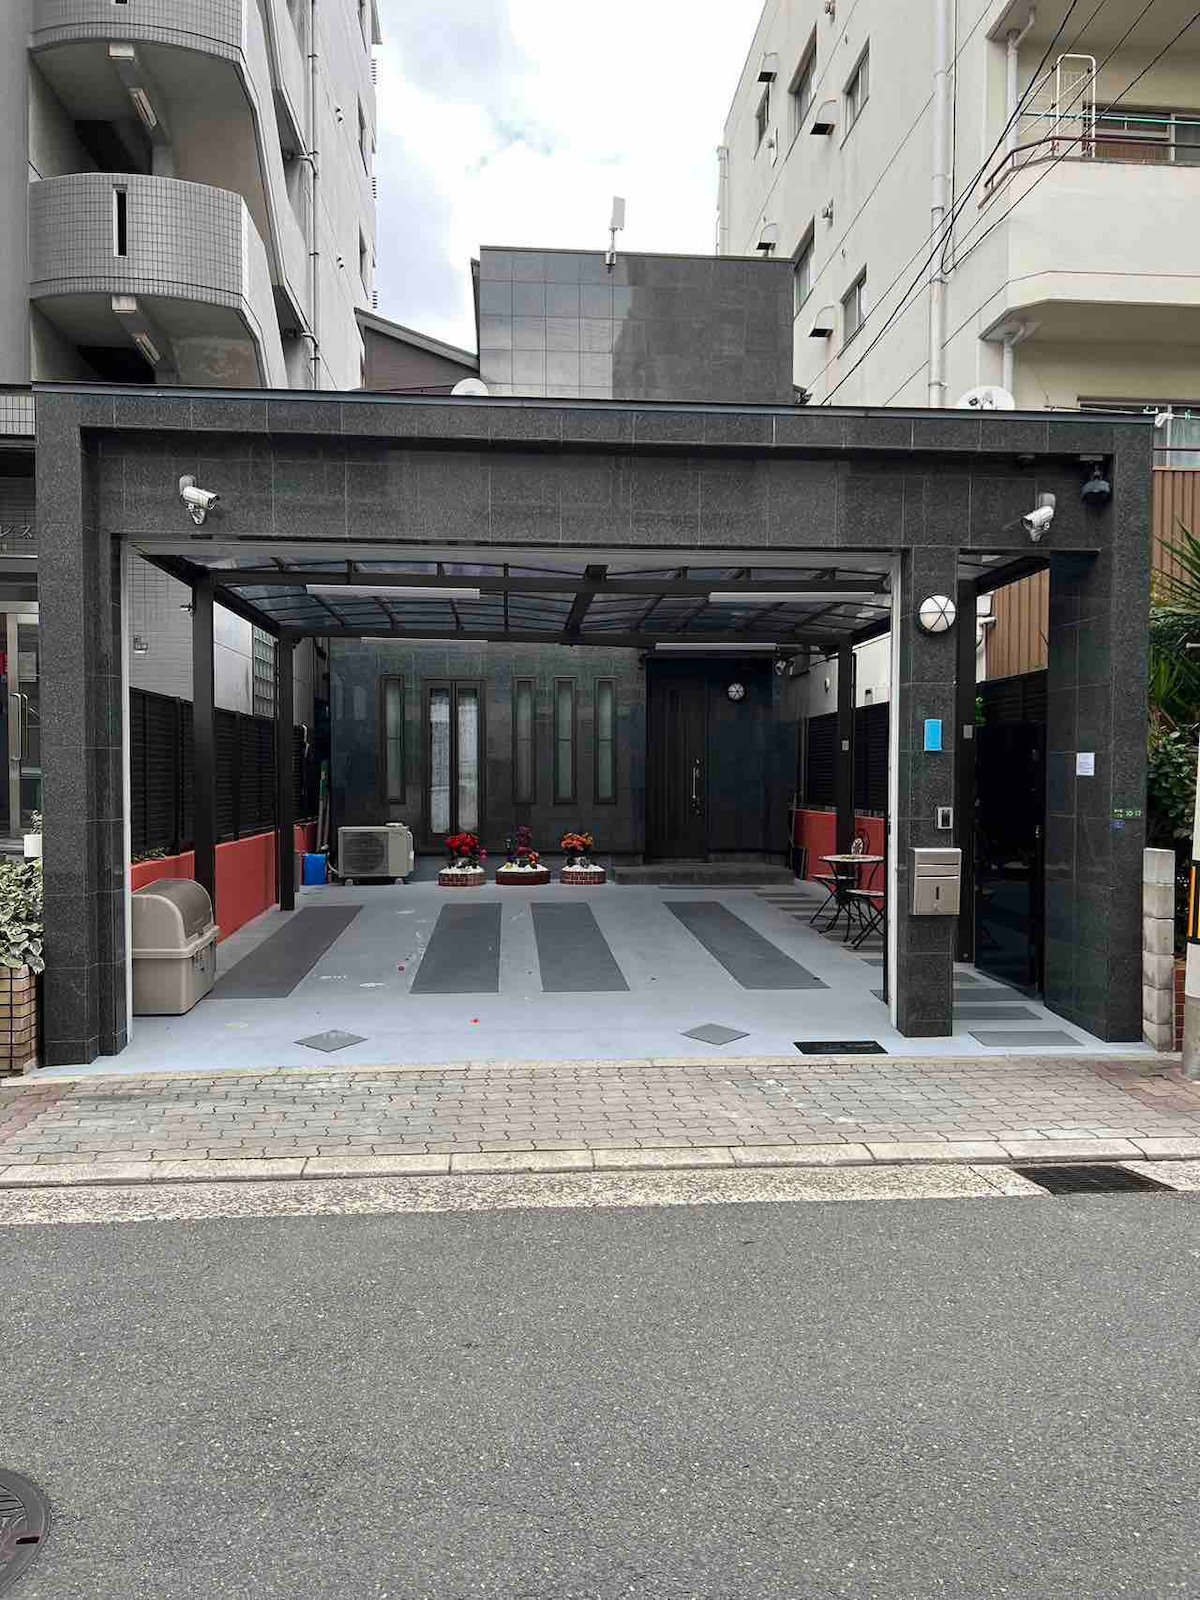 （NEW）大阪市中心豪华高级别墅（3卫3浴）步行5分钟电车直达上本町空港巴士、日本橋、難波、USJ